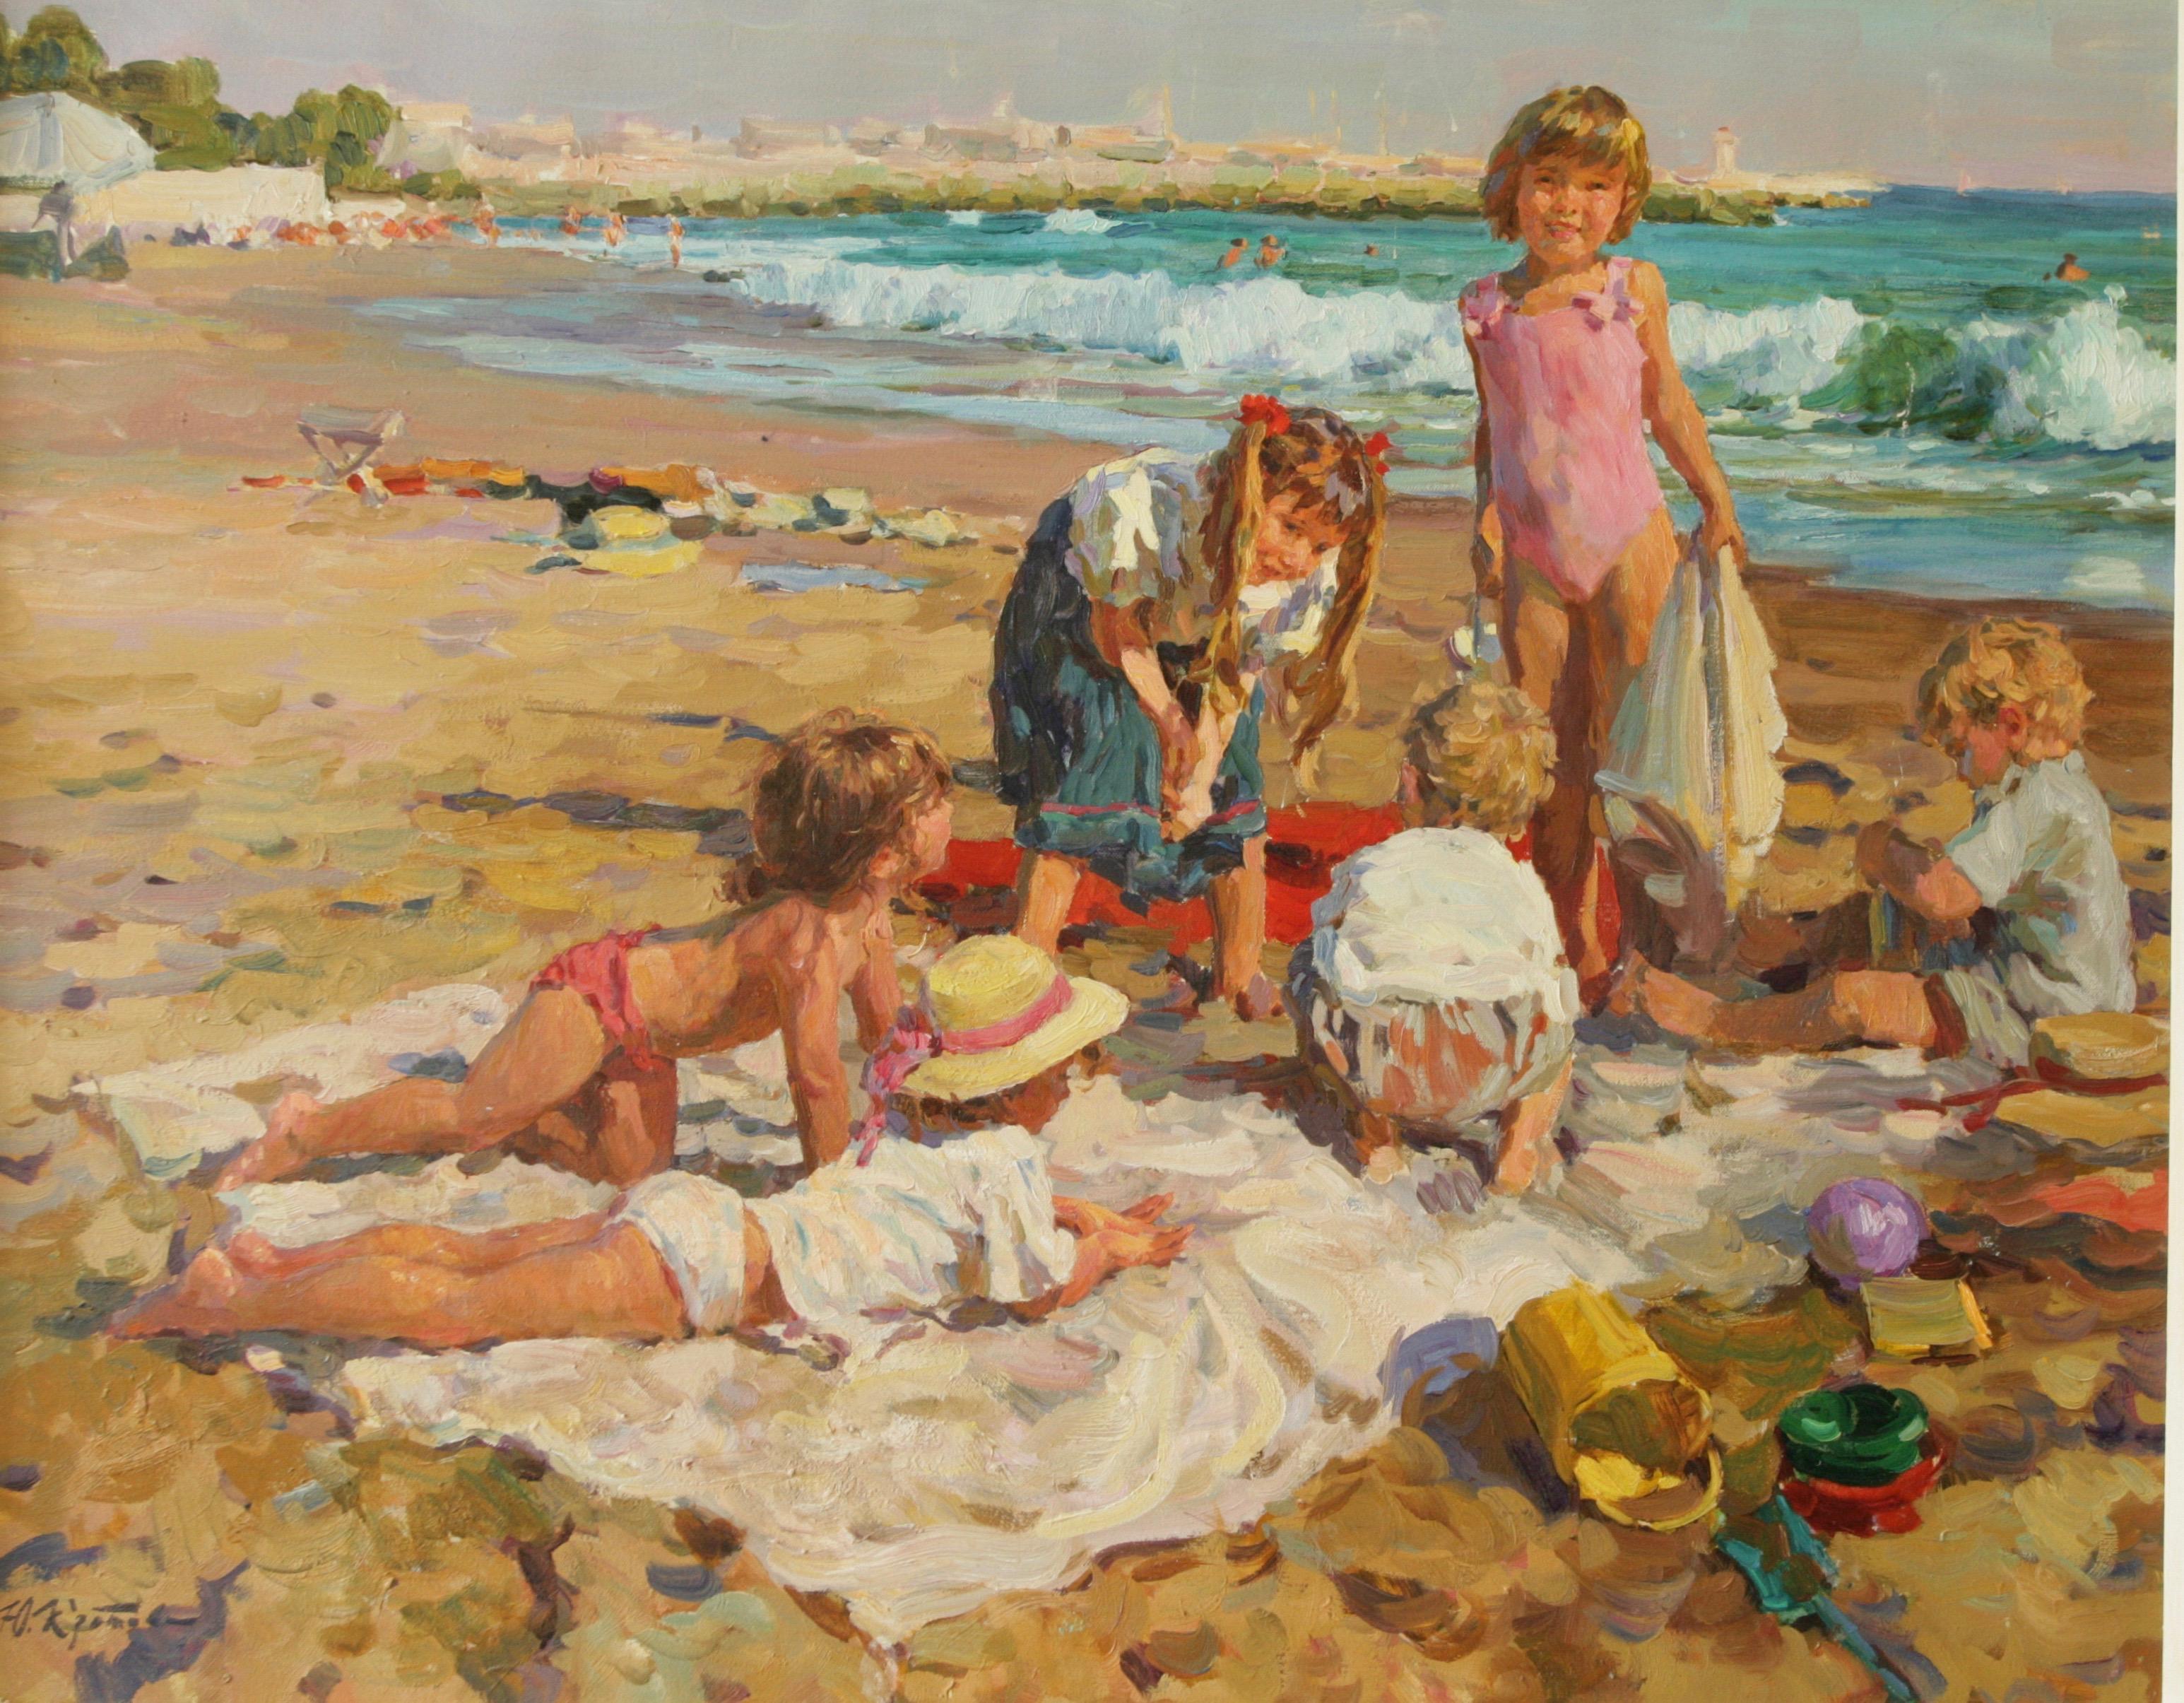 MAY BANK HOLIDAY at the BEACH - Painting by Yuri Krotov